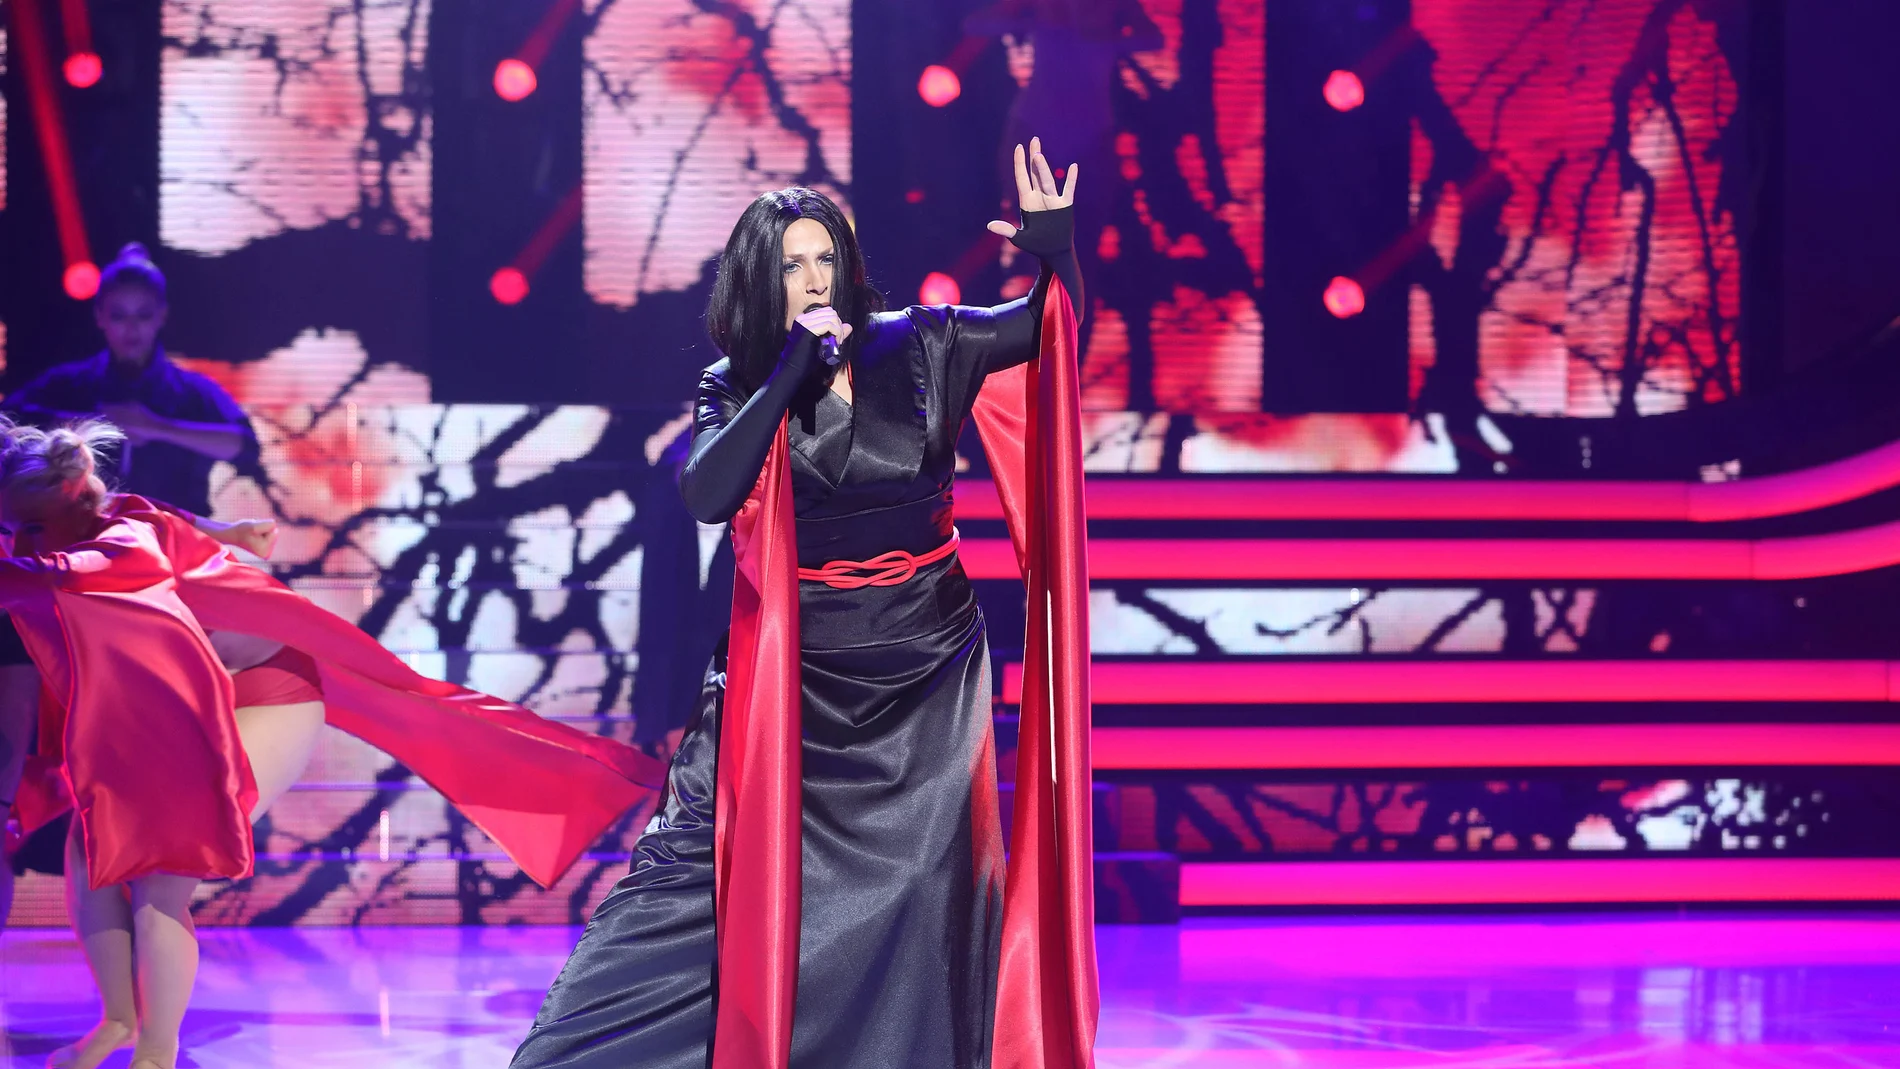 Espectacular puesta en escena de Rosa López para imitar el éxito 'Frozen' de Madonna